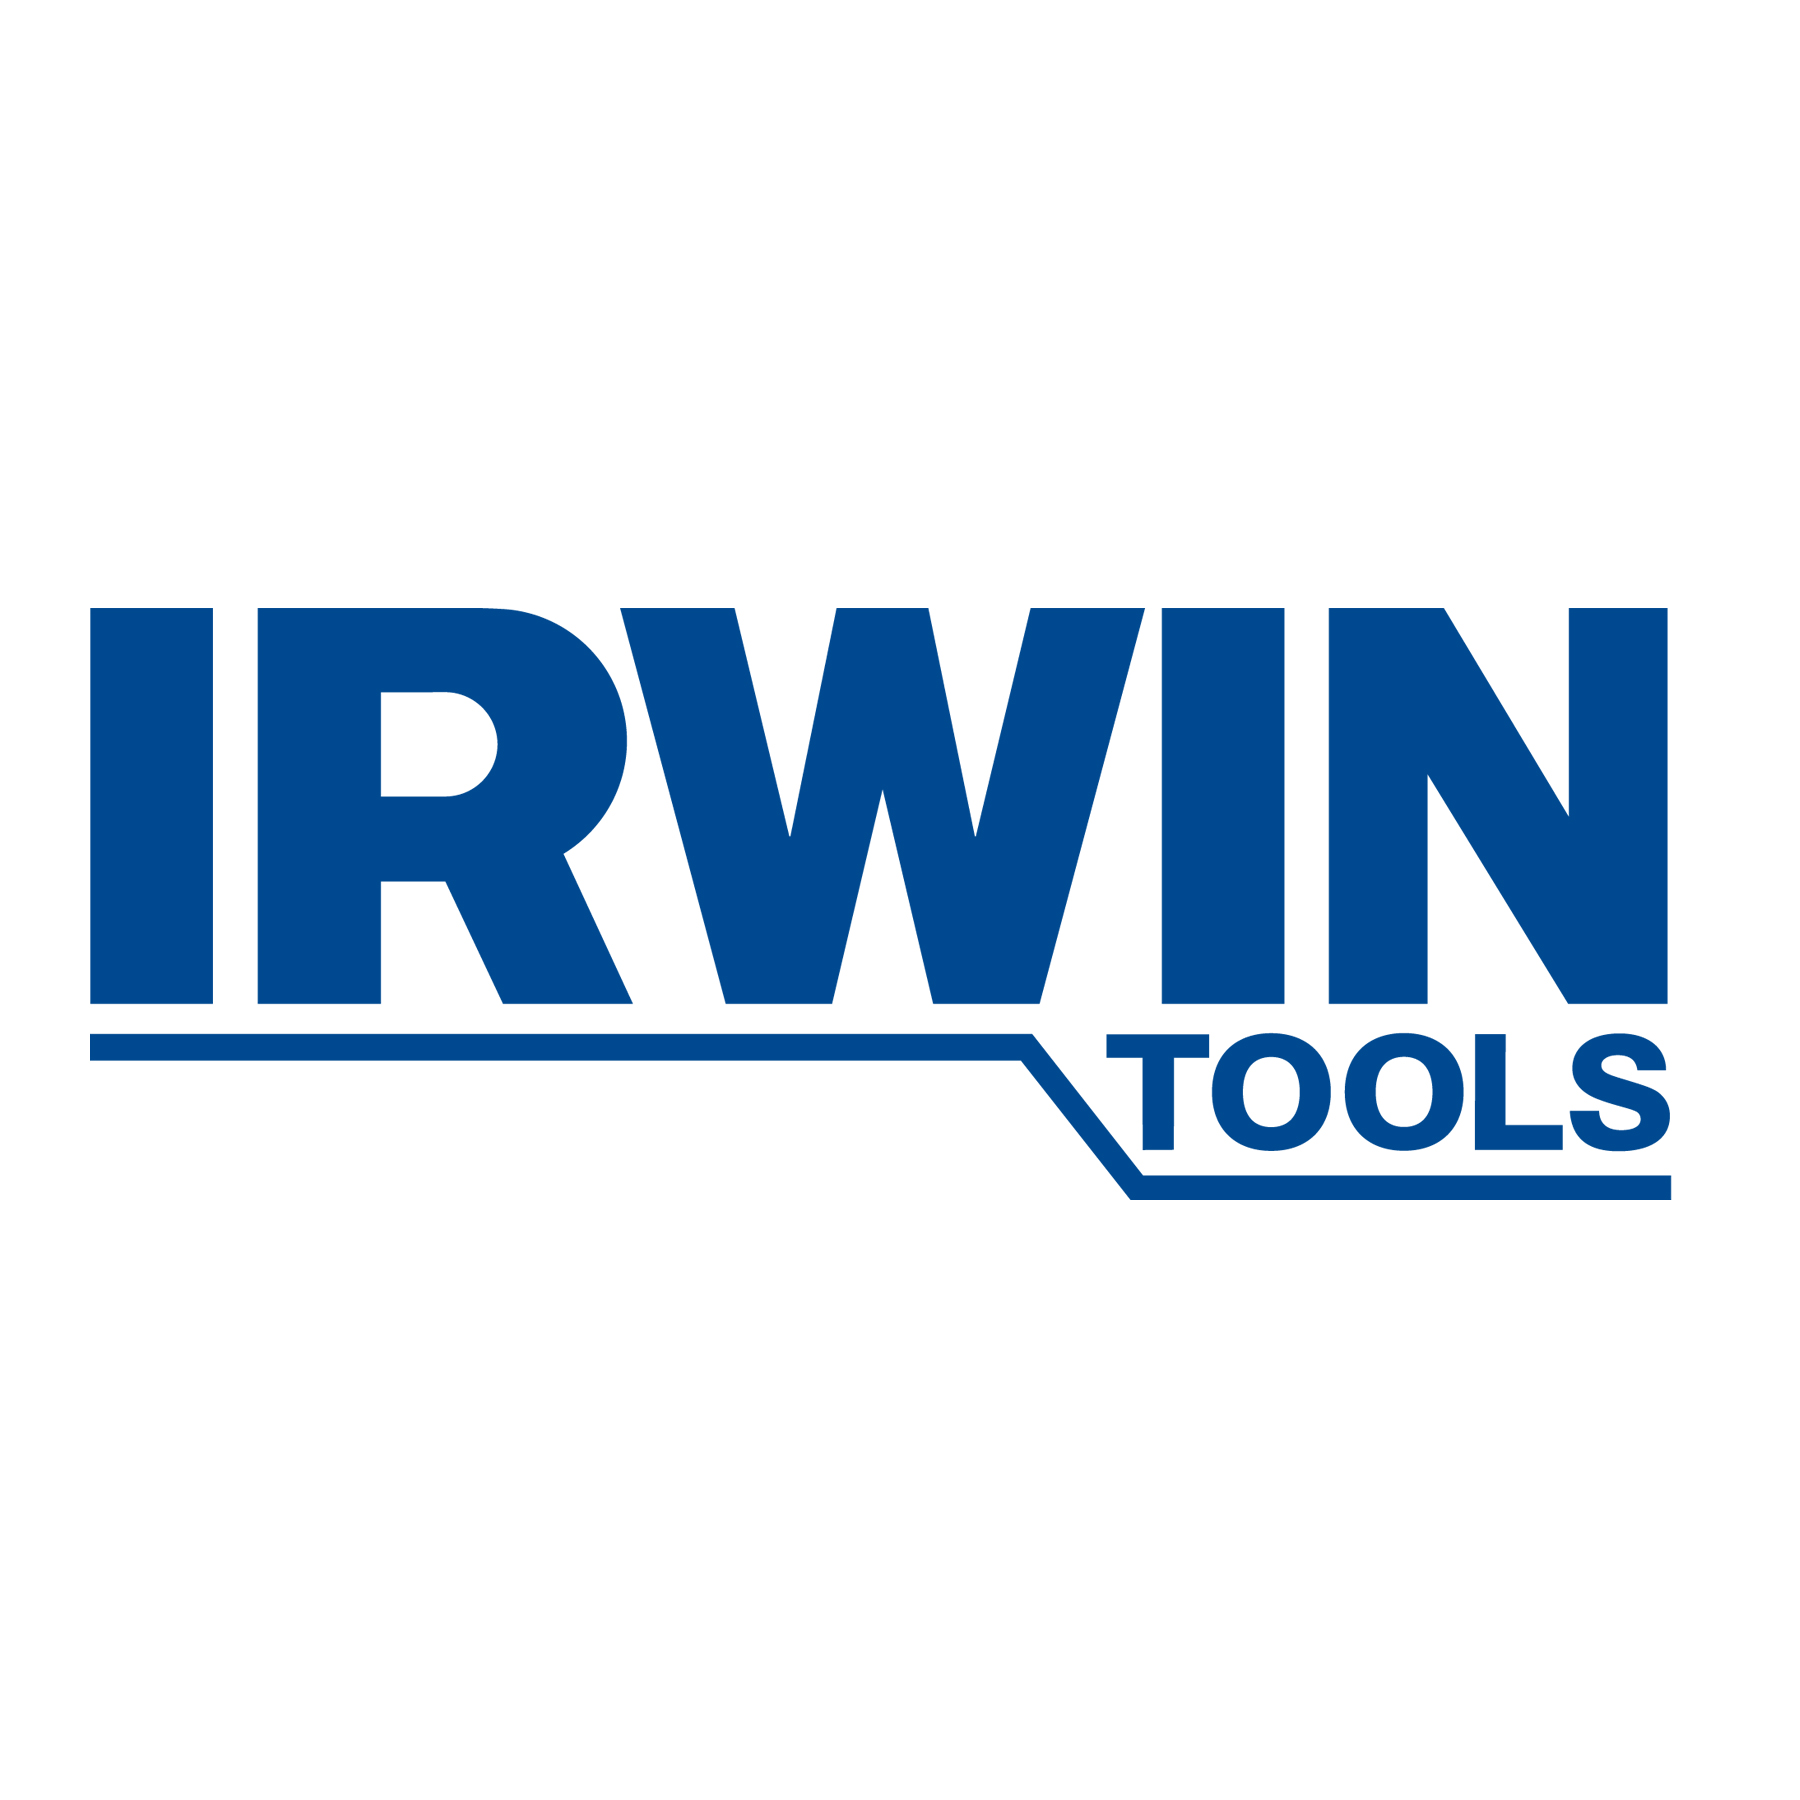 Irwin Naturals® Power to Sle